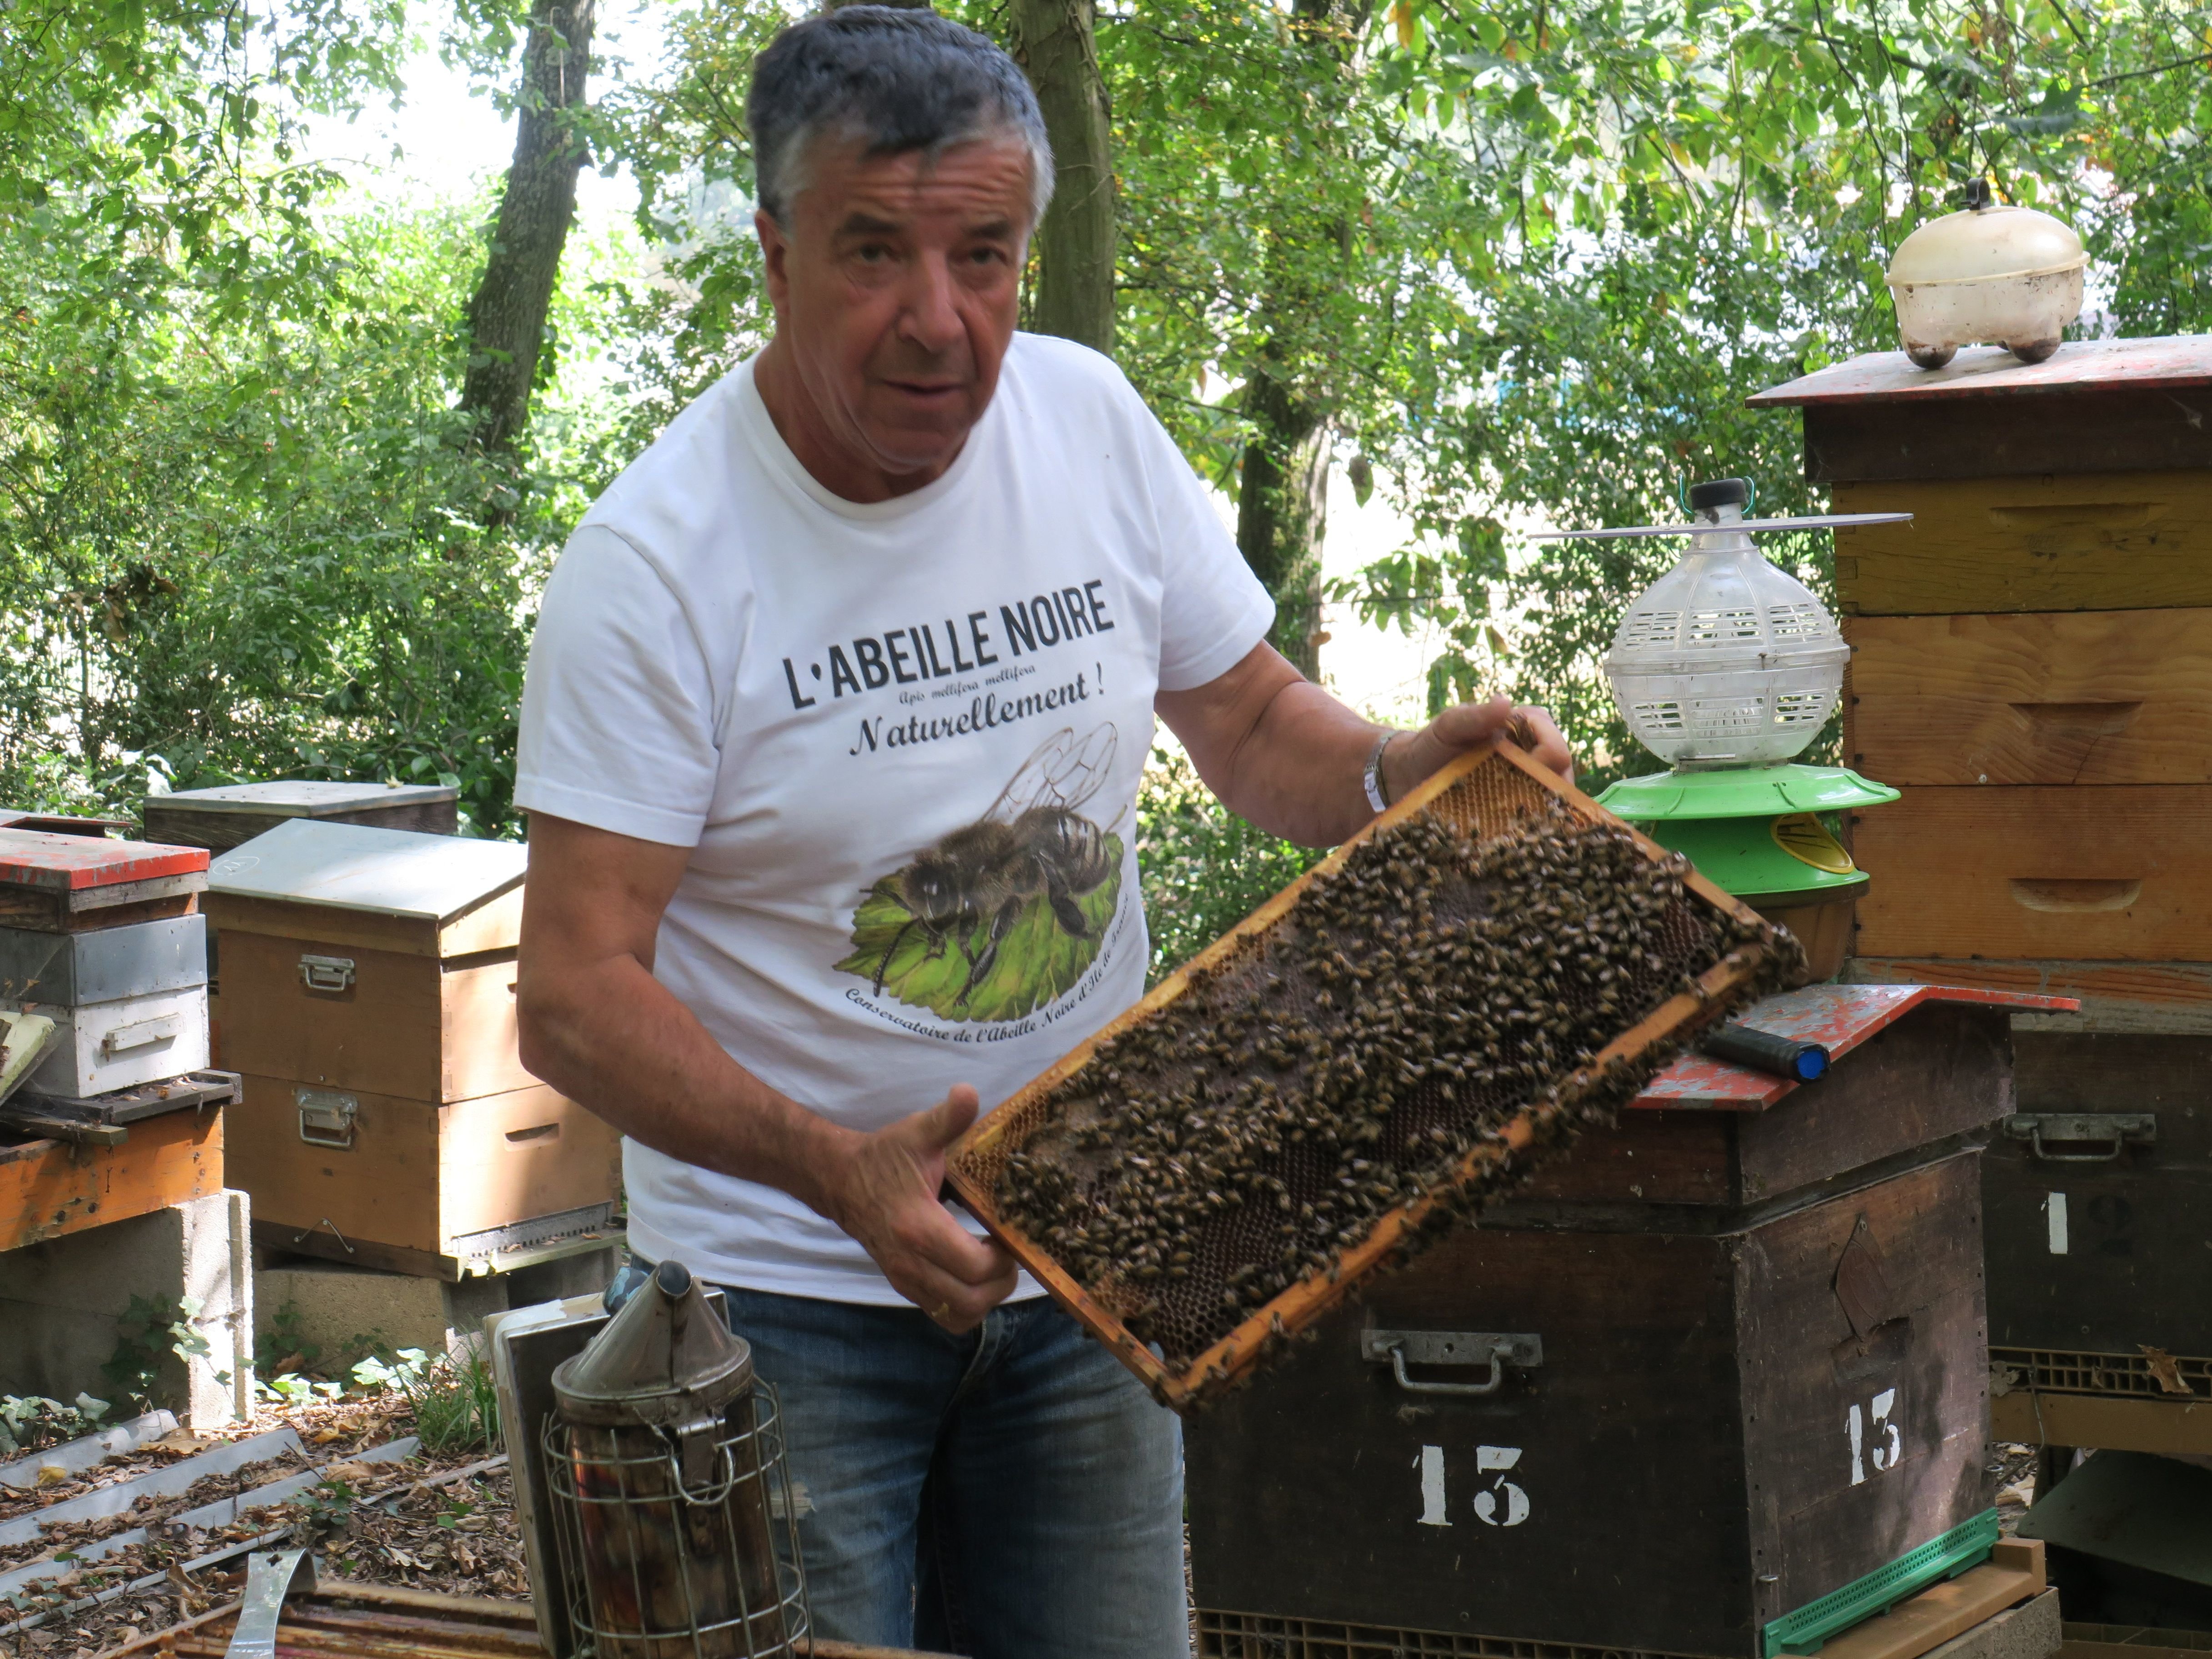 Les colonies d'abeilles des ruches franciliennes meurent plus qu'ailleurs. Selon les chiffres collectées auprès des apiculteurs au printemps, près du tiers des abeilles n'a pas passé l'hiver. Jacky Boisseau, qui entretient une trentaine de ruches à Plaisir, a vu leur productivité chuter de moitié en 35 ans. LP/Aurélie Foulon